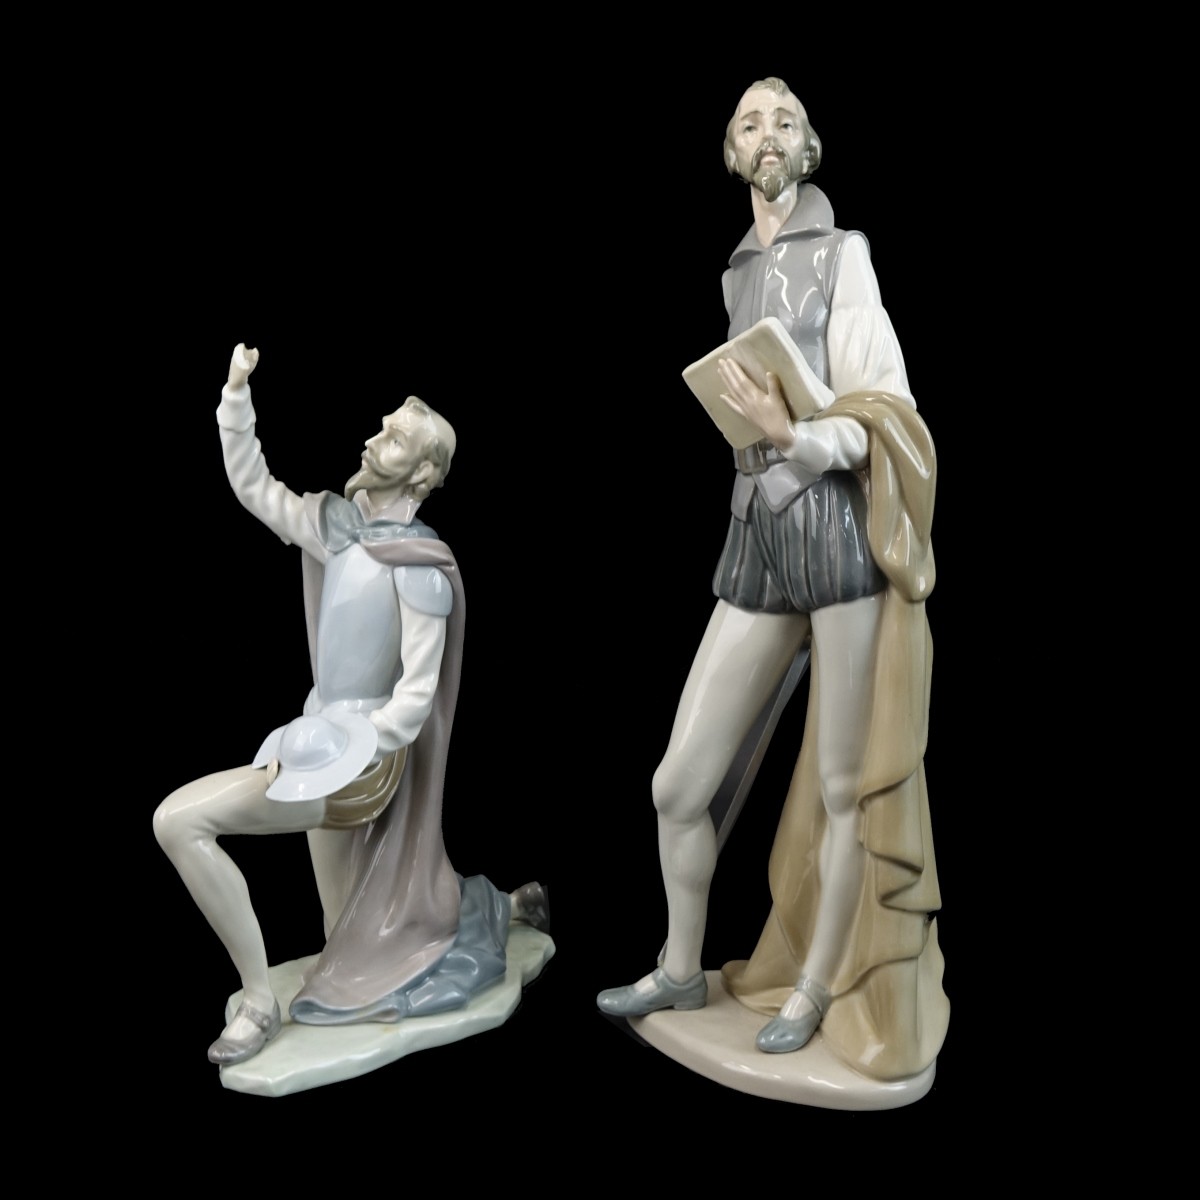 Two (2) Vintage Don Quixote Porcelain Figurines